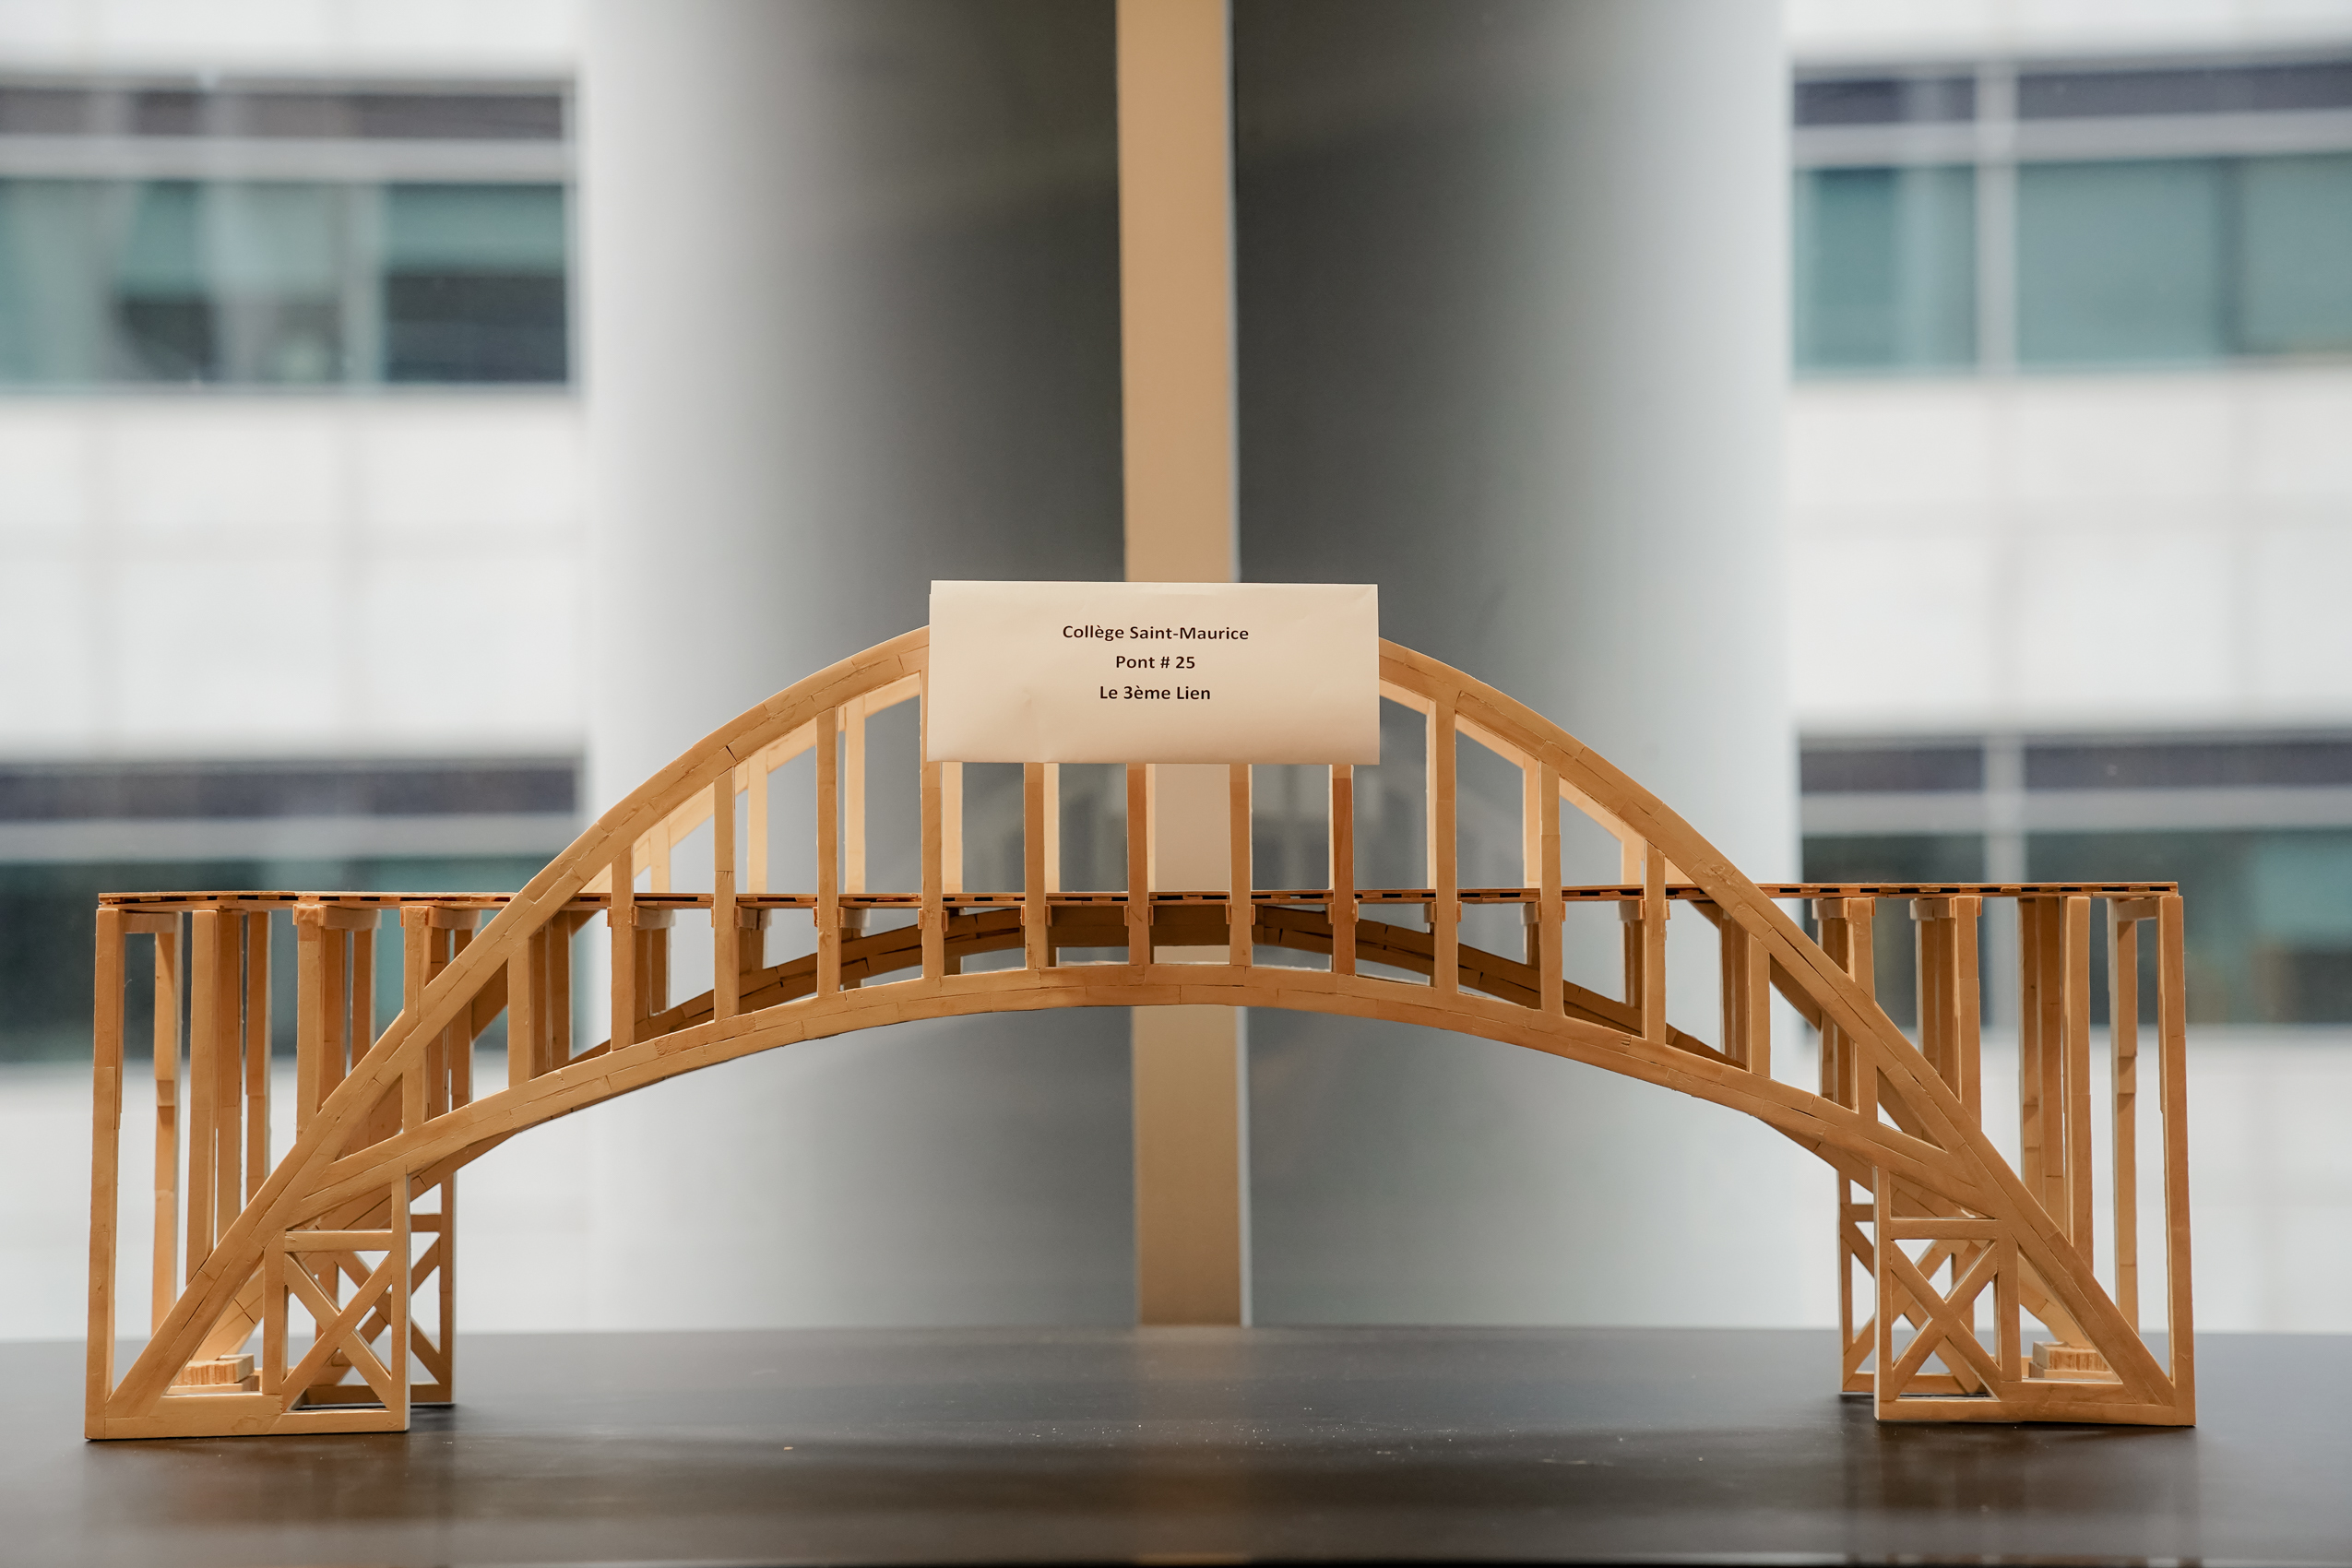 Maquette de pont en bois affichée par le Collège Saint-Maurice, nommée "Pont #25, Le 3ème Lien".